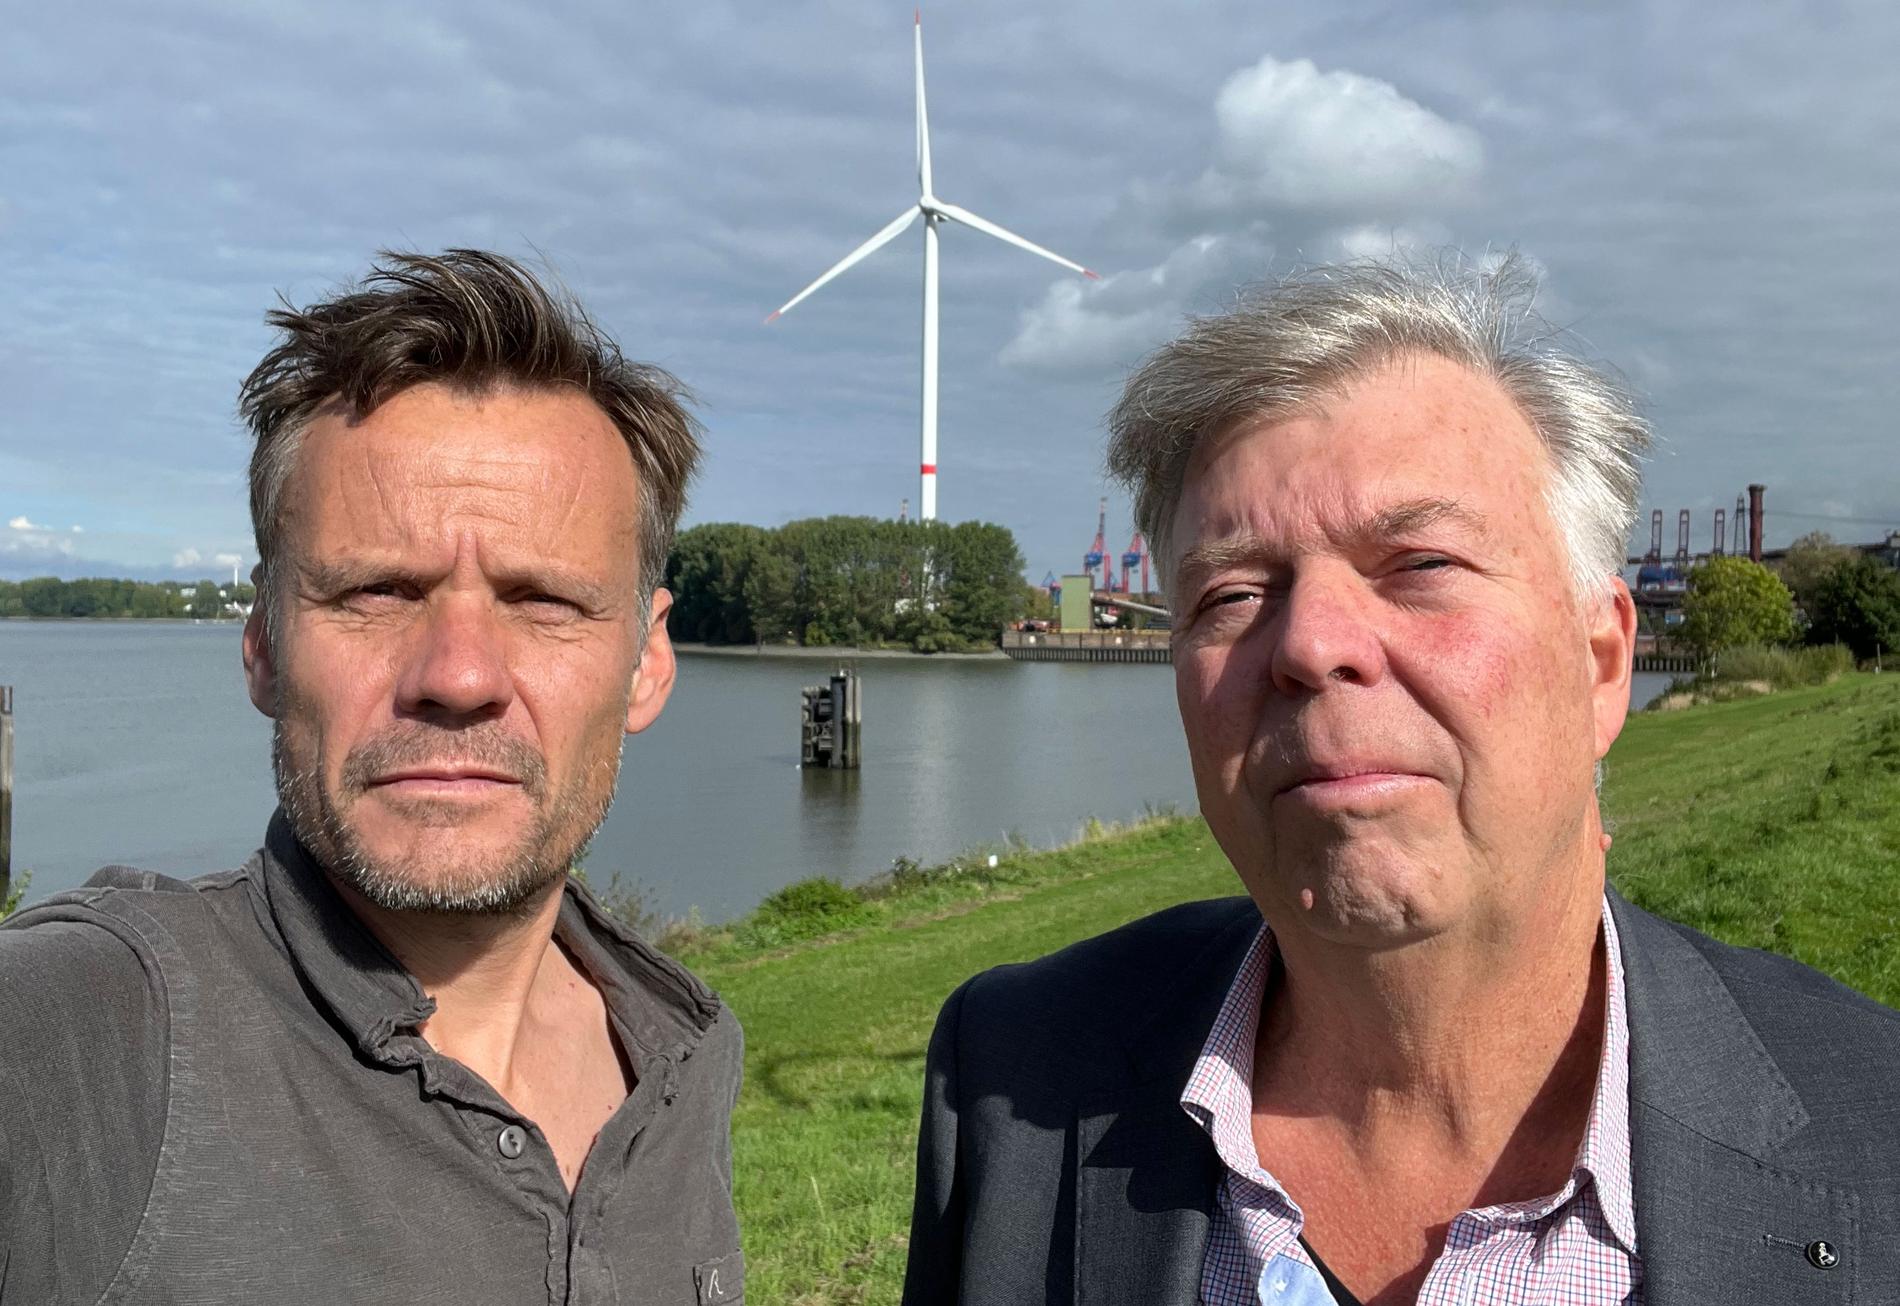 Aftonbladets Jerker Ivarsson och Wolfgang Hansson på plats i Wilhelmshaven, Tyskland.